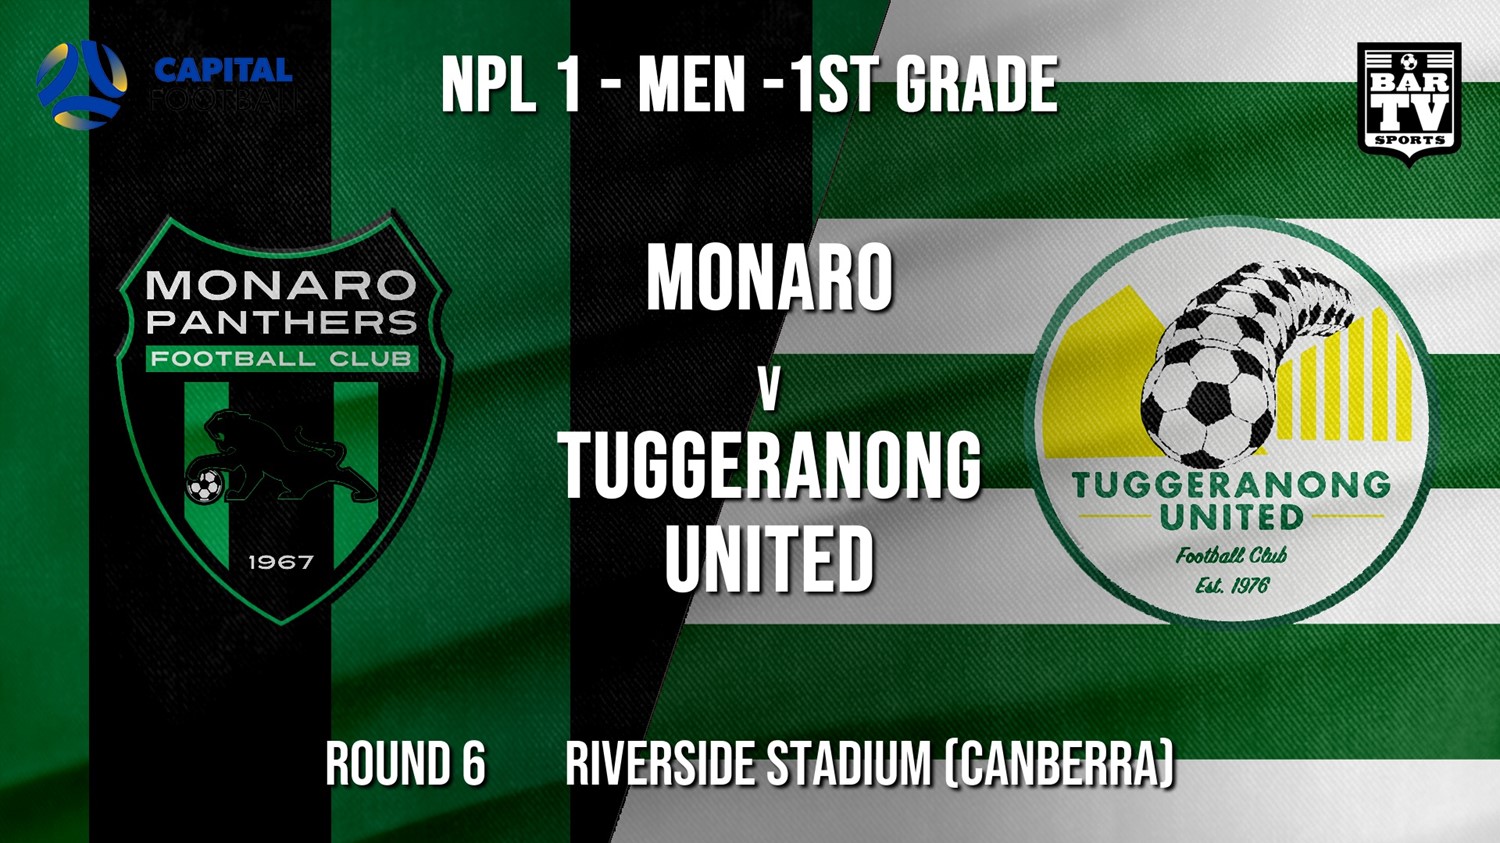 NPL - CAPITAL Round 6 - Monaro Panthers FC v Tuggeranong United FC Minigame Slate Image